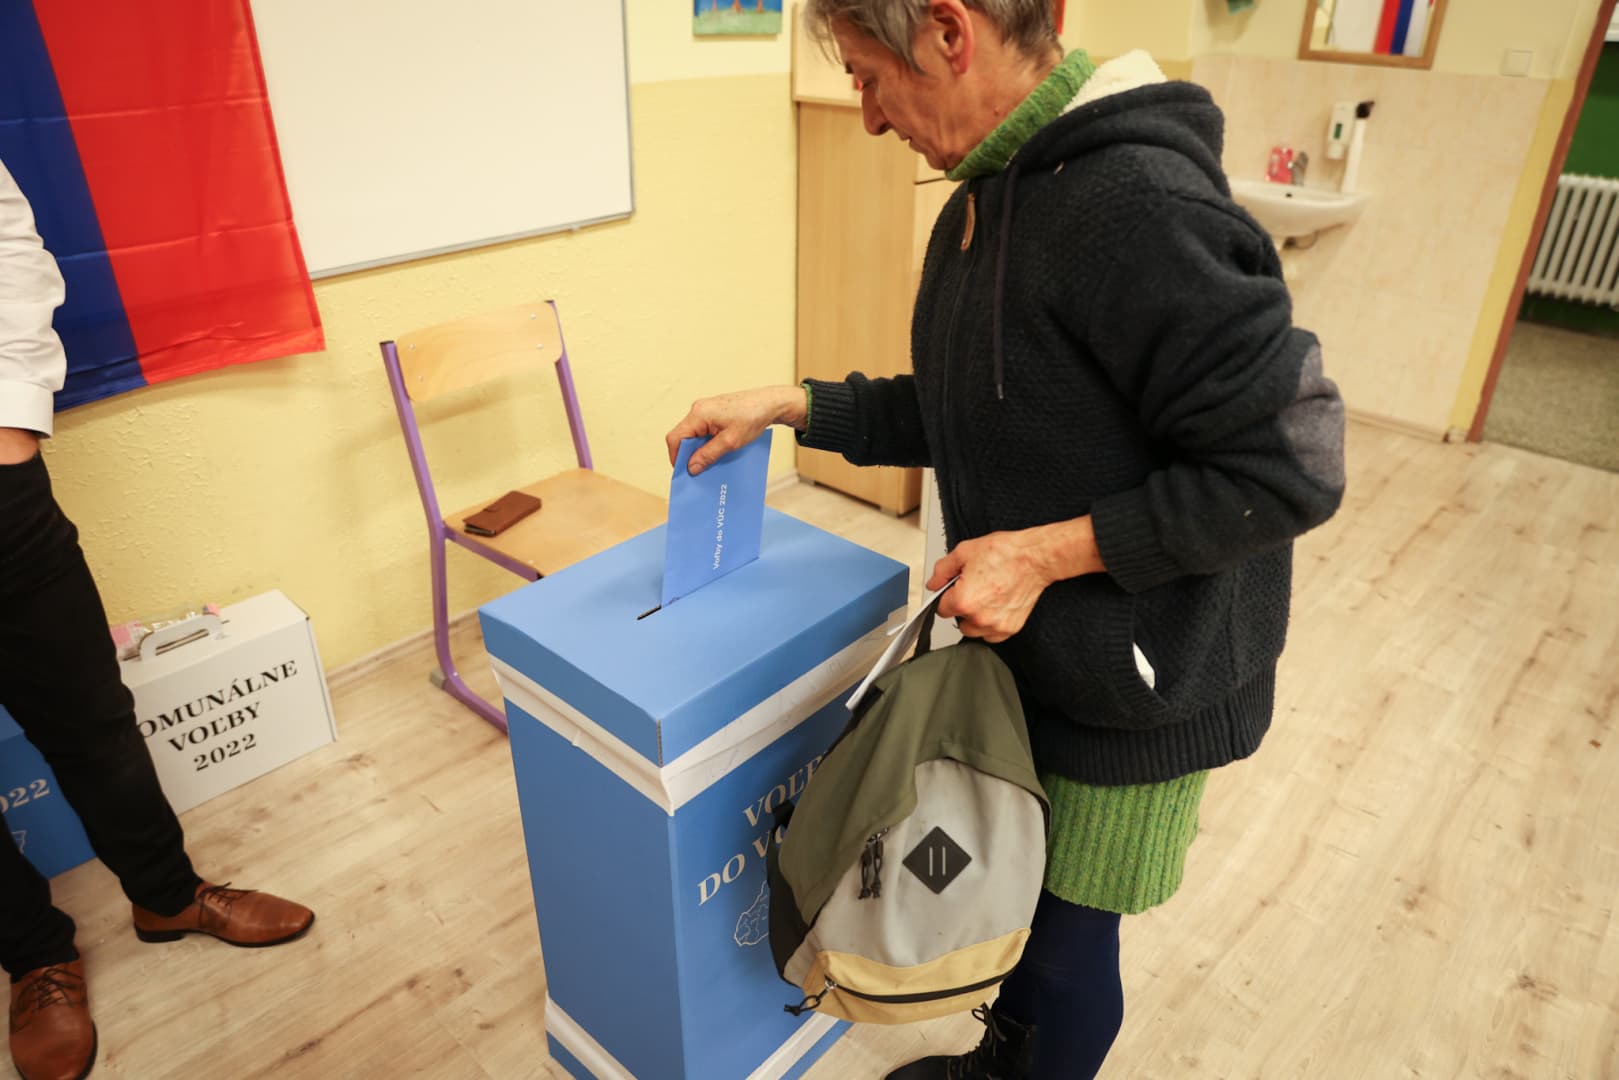 Választások 2022: Akadt, aki 15 percig ült a szavazófülkében Dunaszerdahelyen